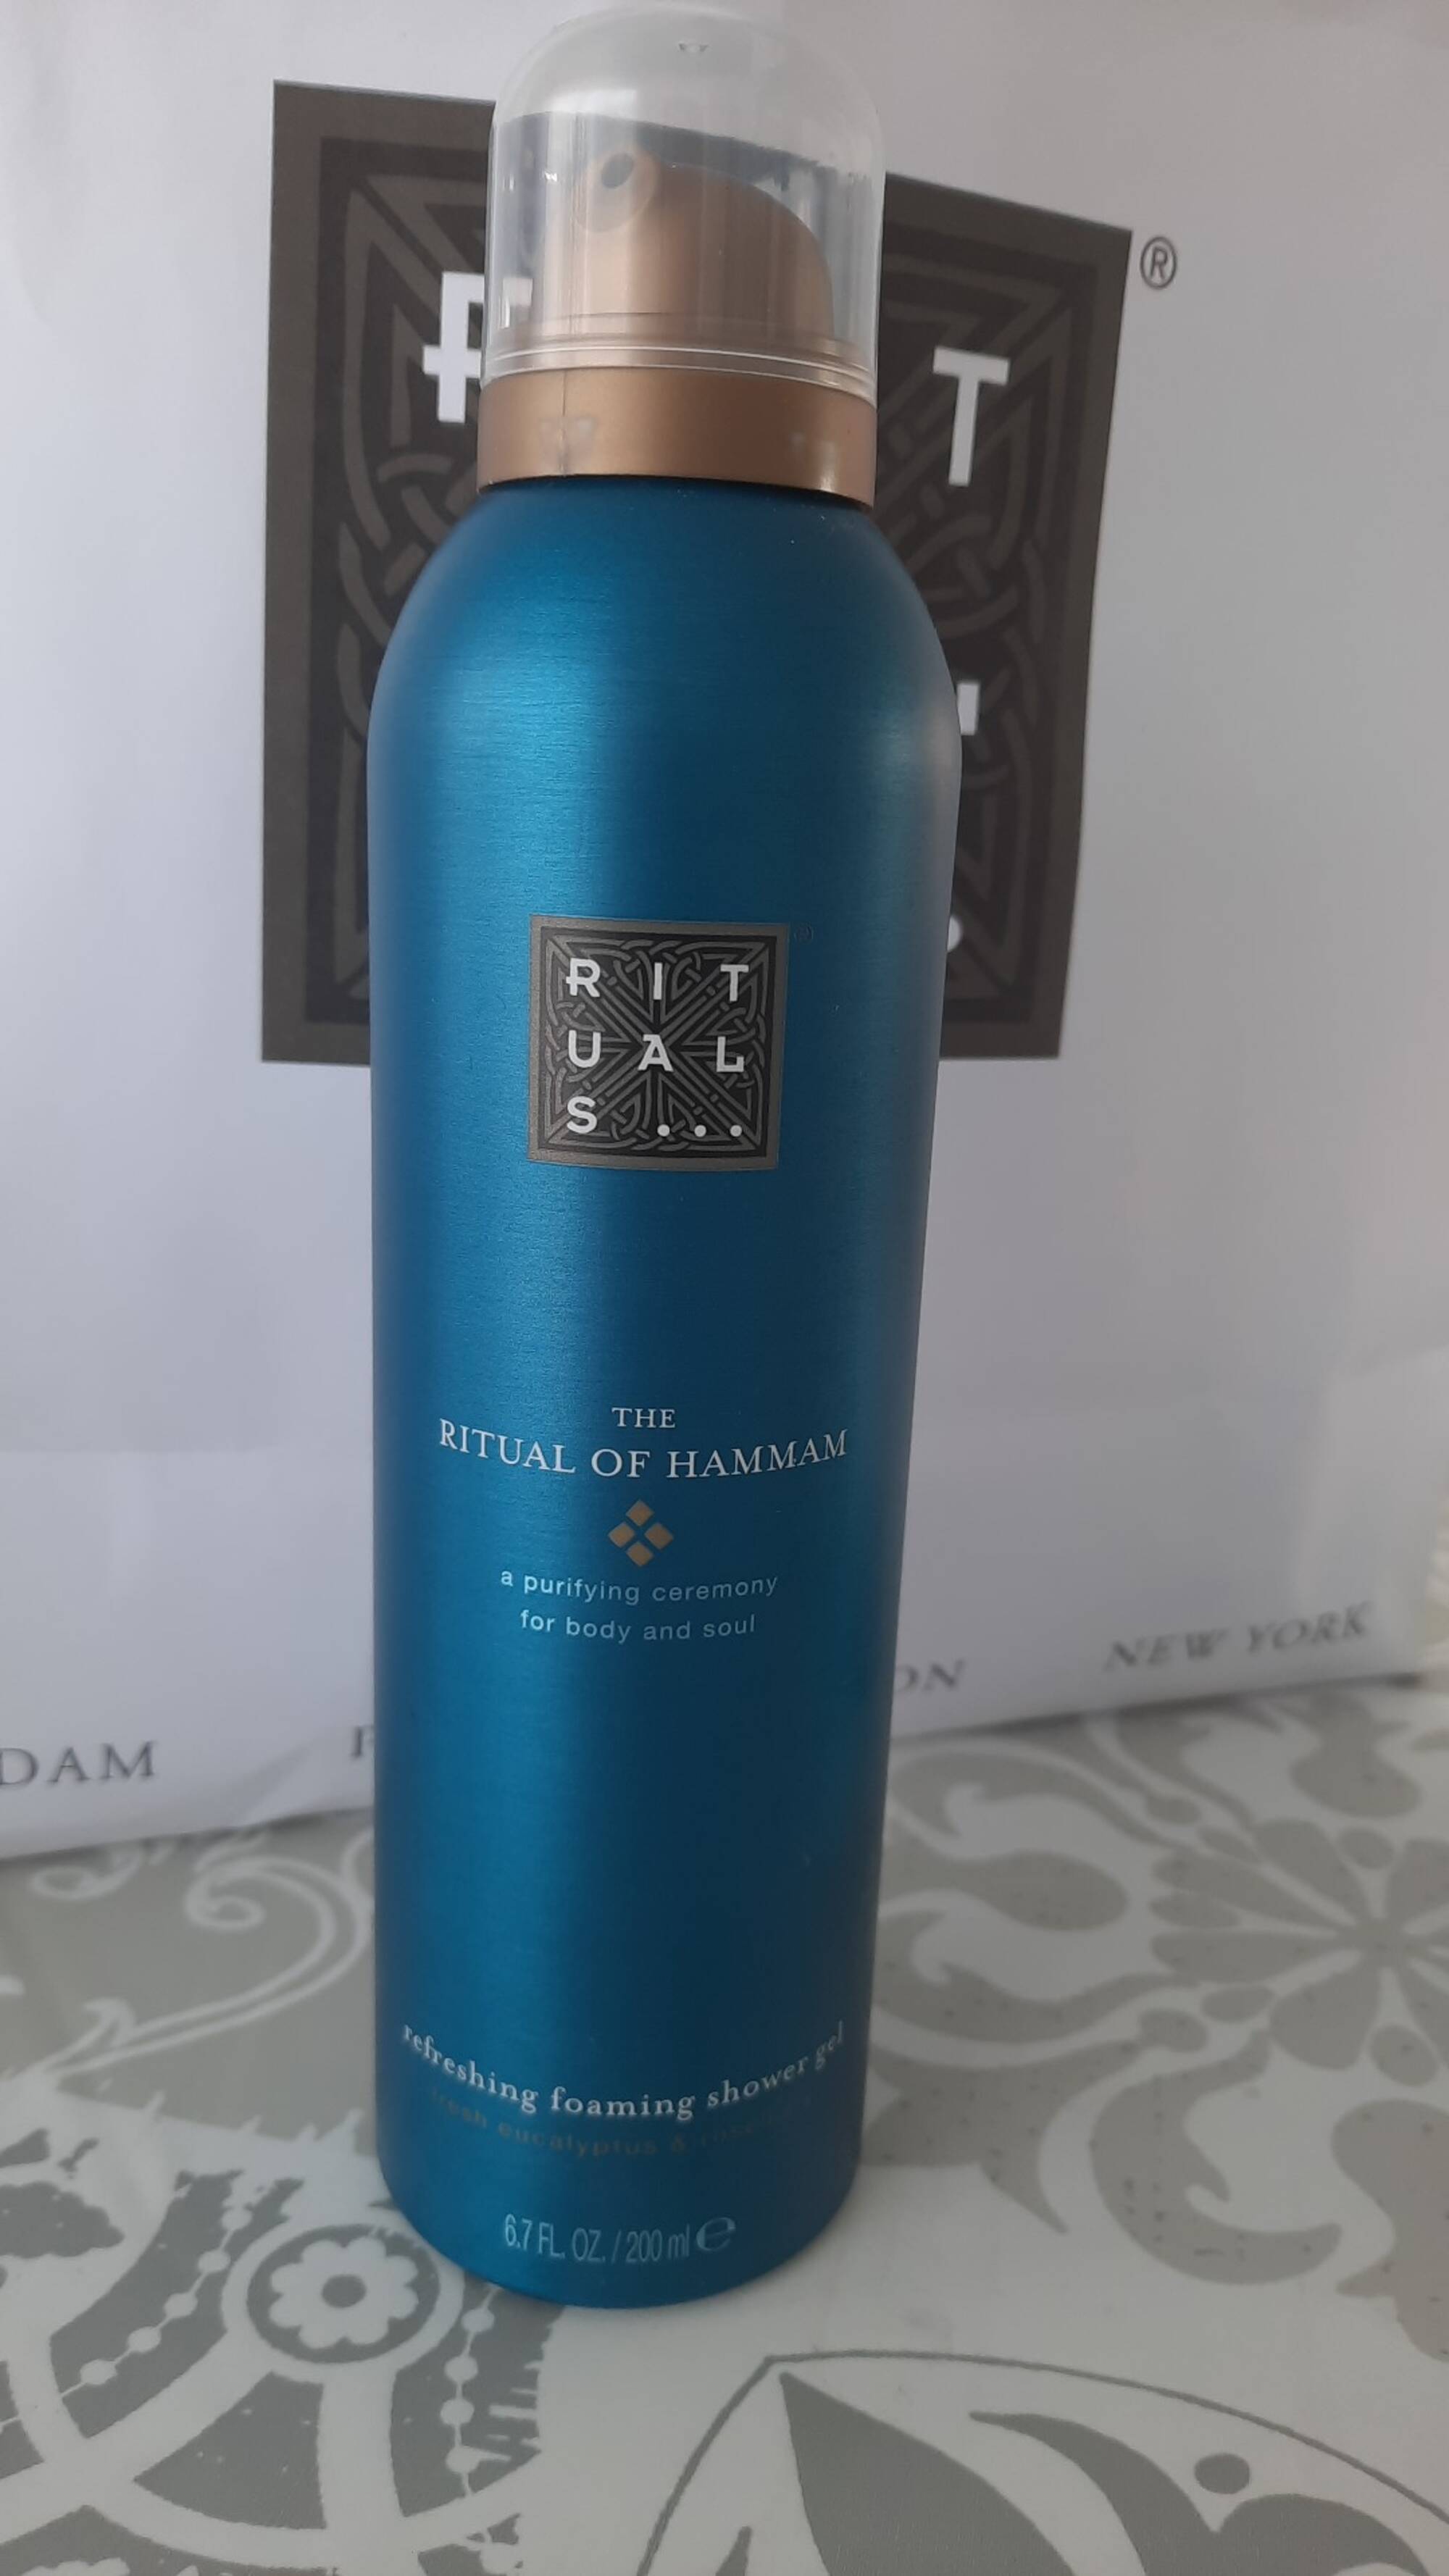 RITUALS - The ritual of Hammam - Refreshing foaming shower gel